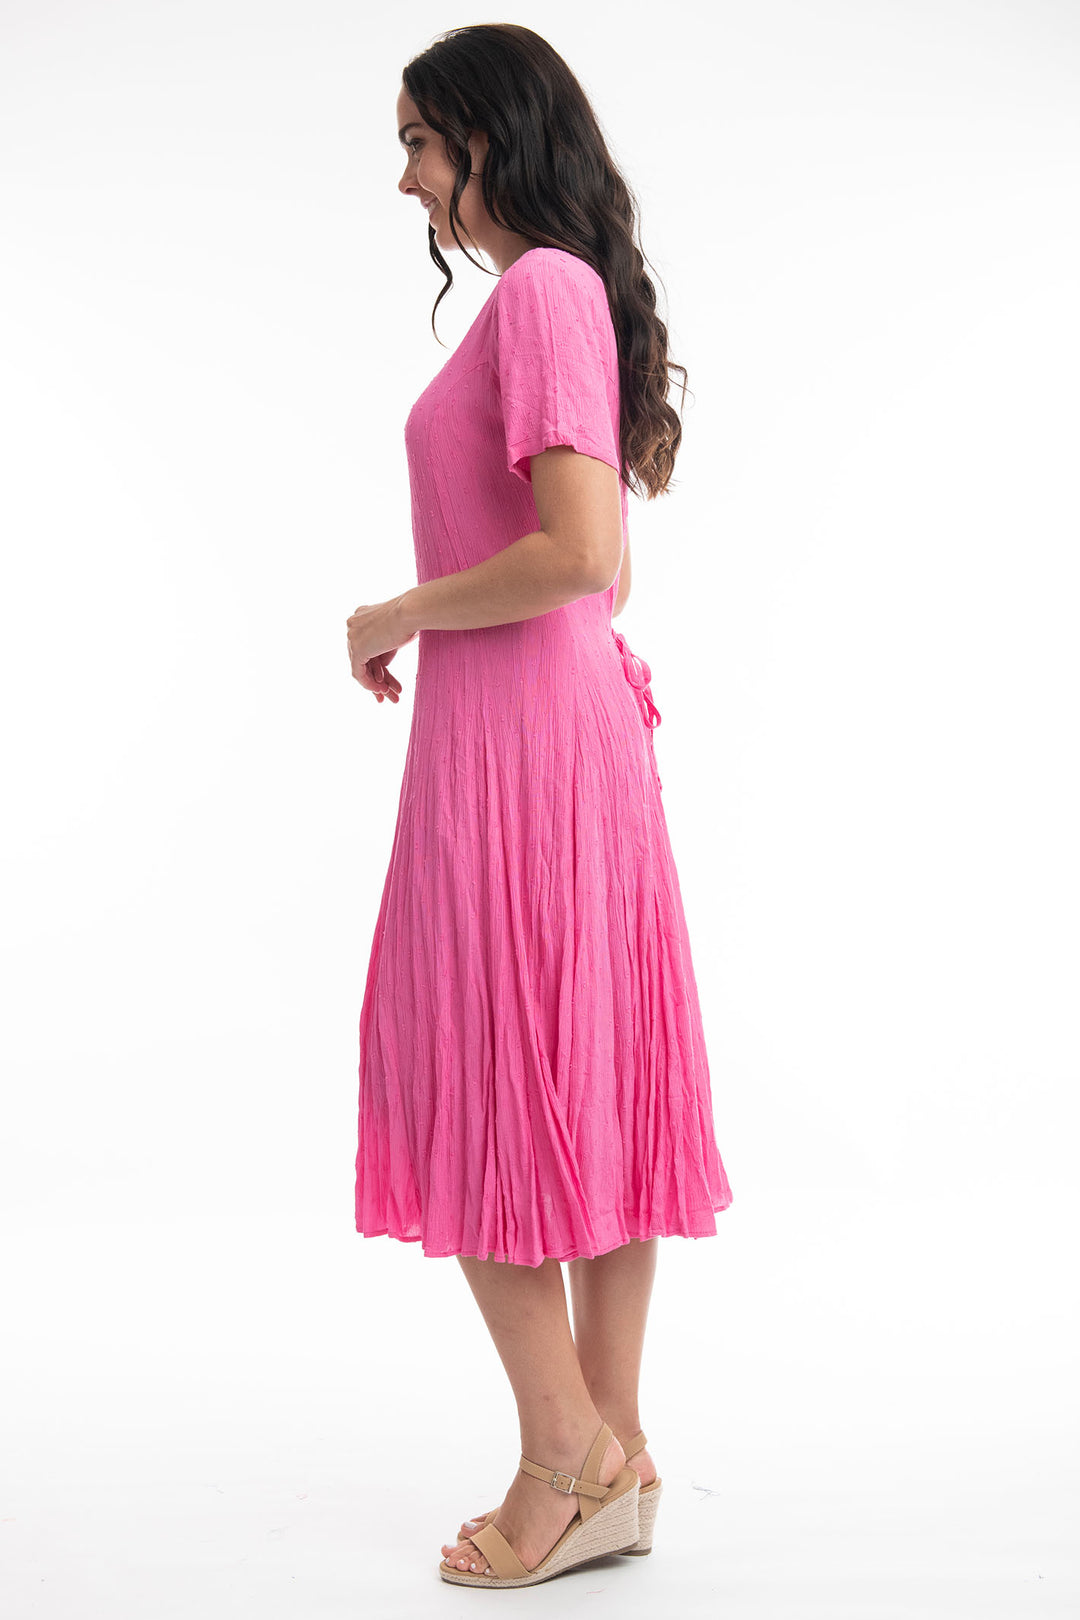 Orientique 81261 Rose Pink Short Sleeve Godet Dress - Dotique